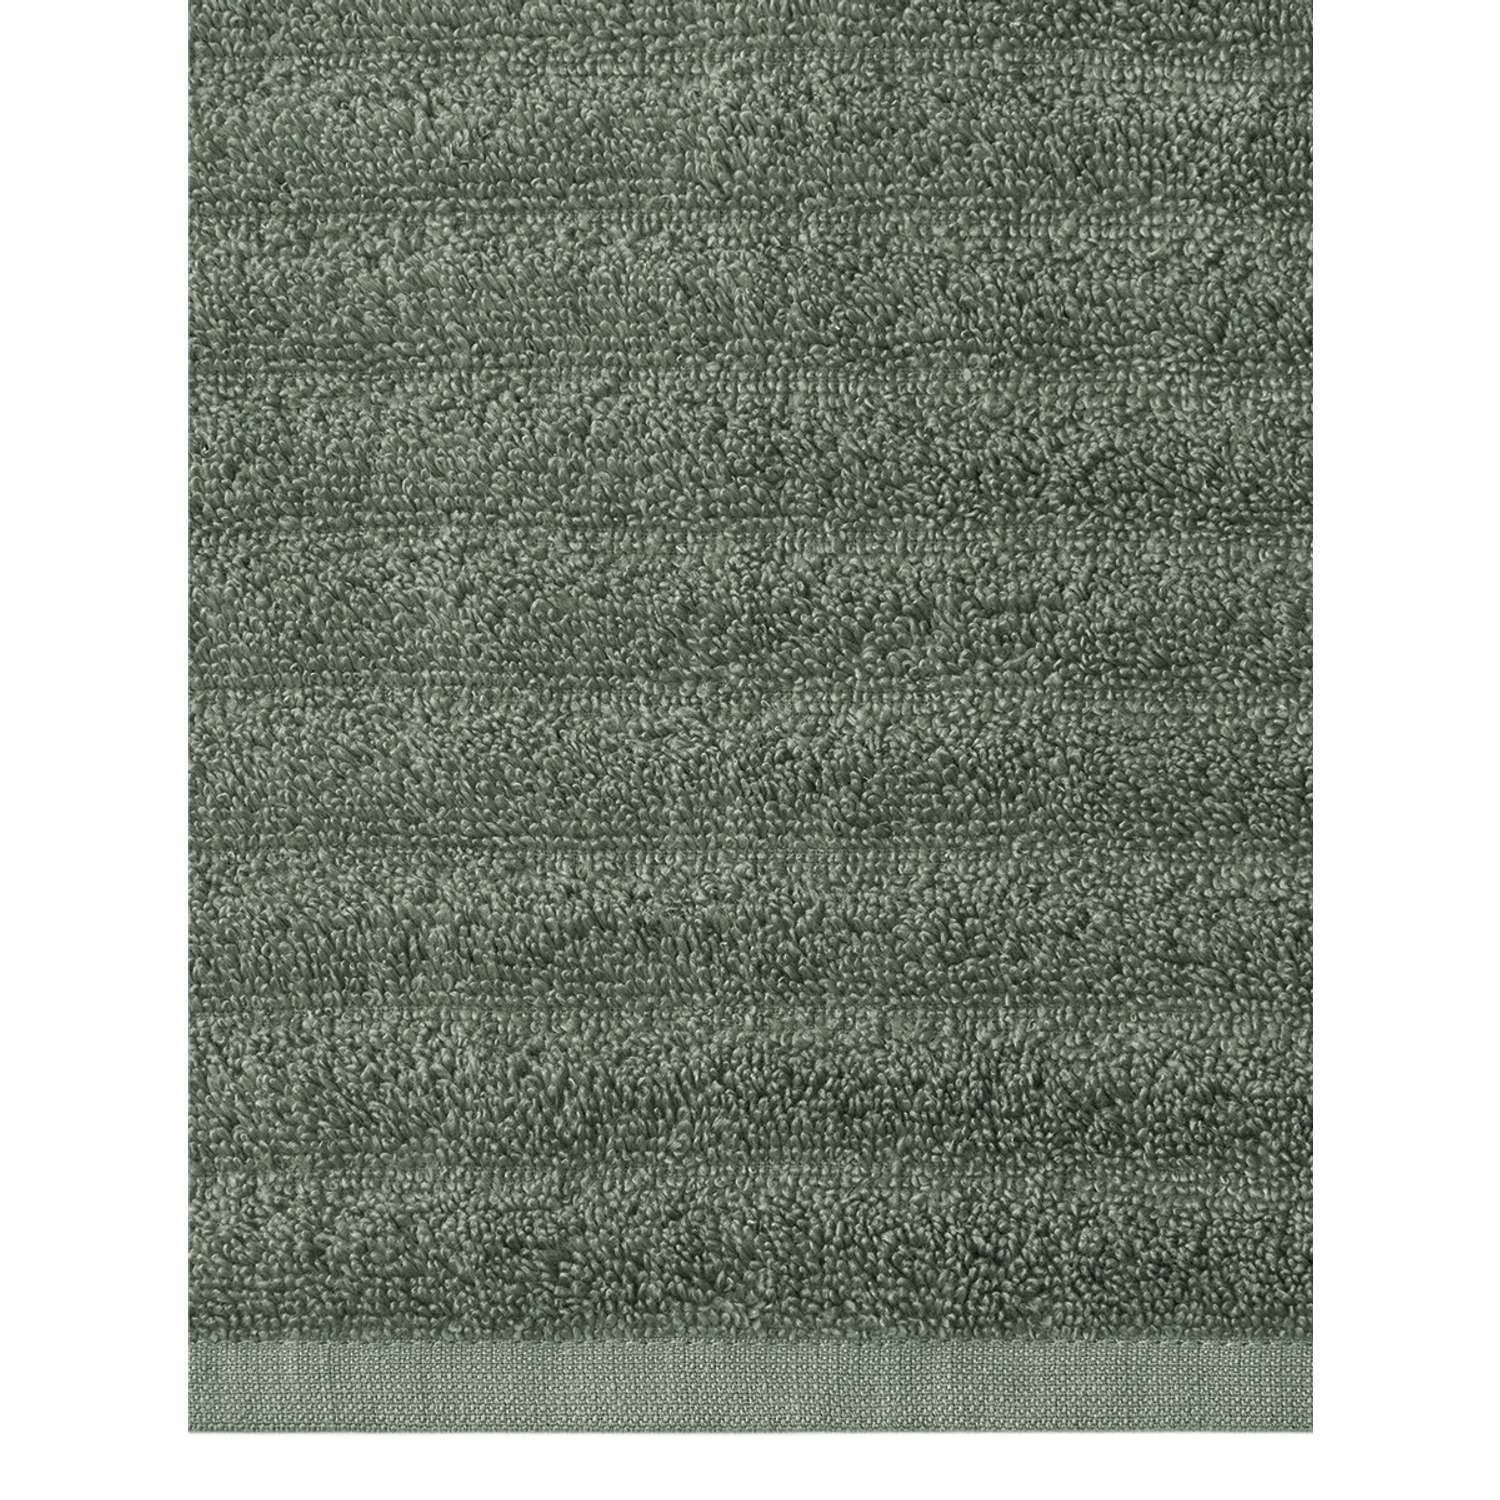 Полотенце махровое LUCKY Волна 40x60 см 100% хлопок зеленый - фото 5